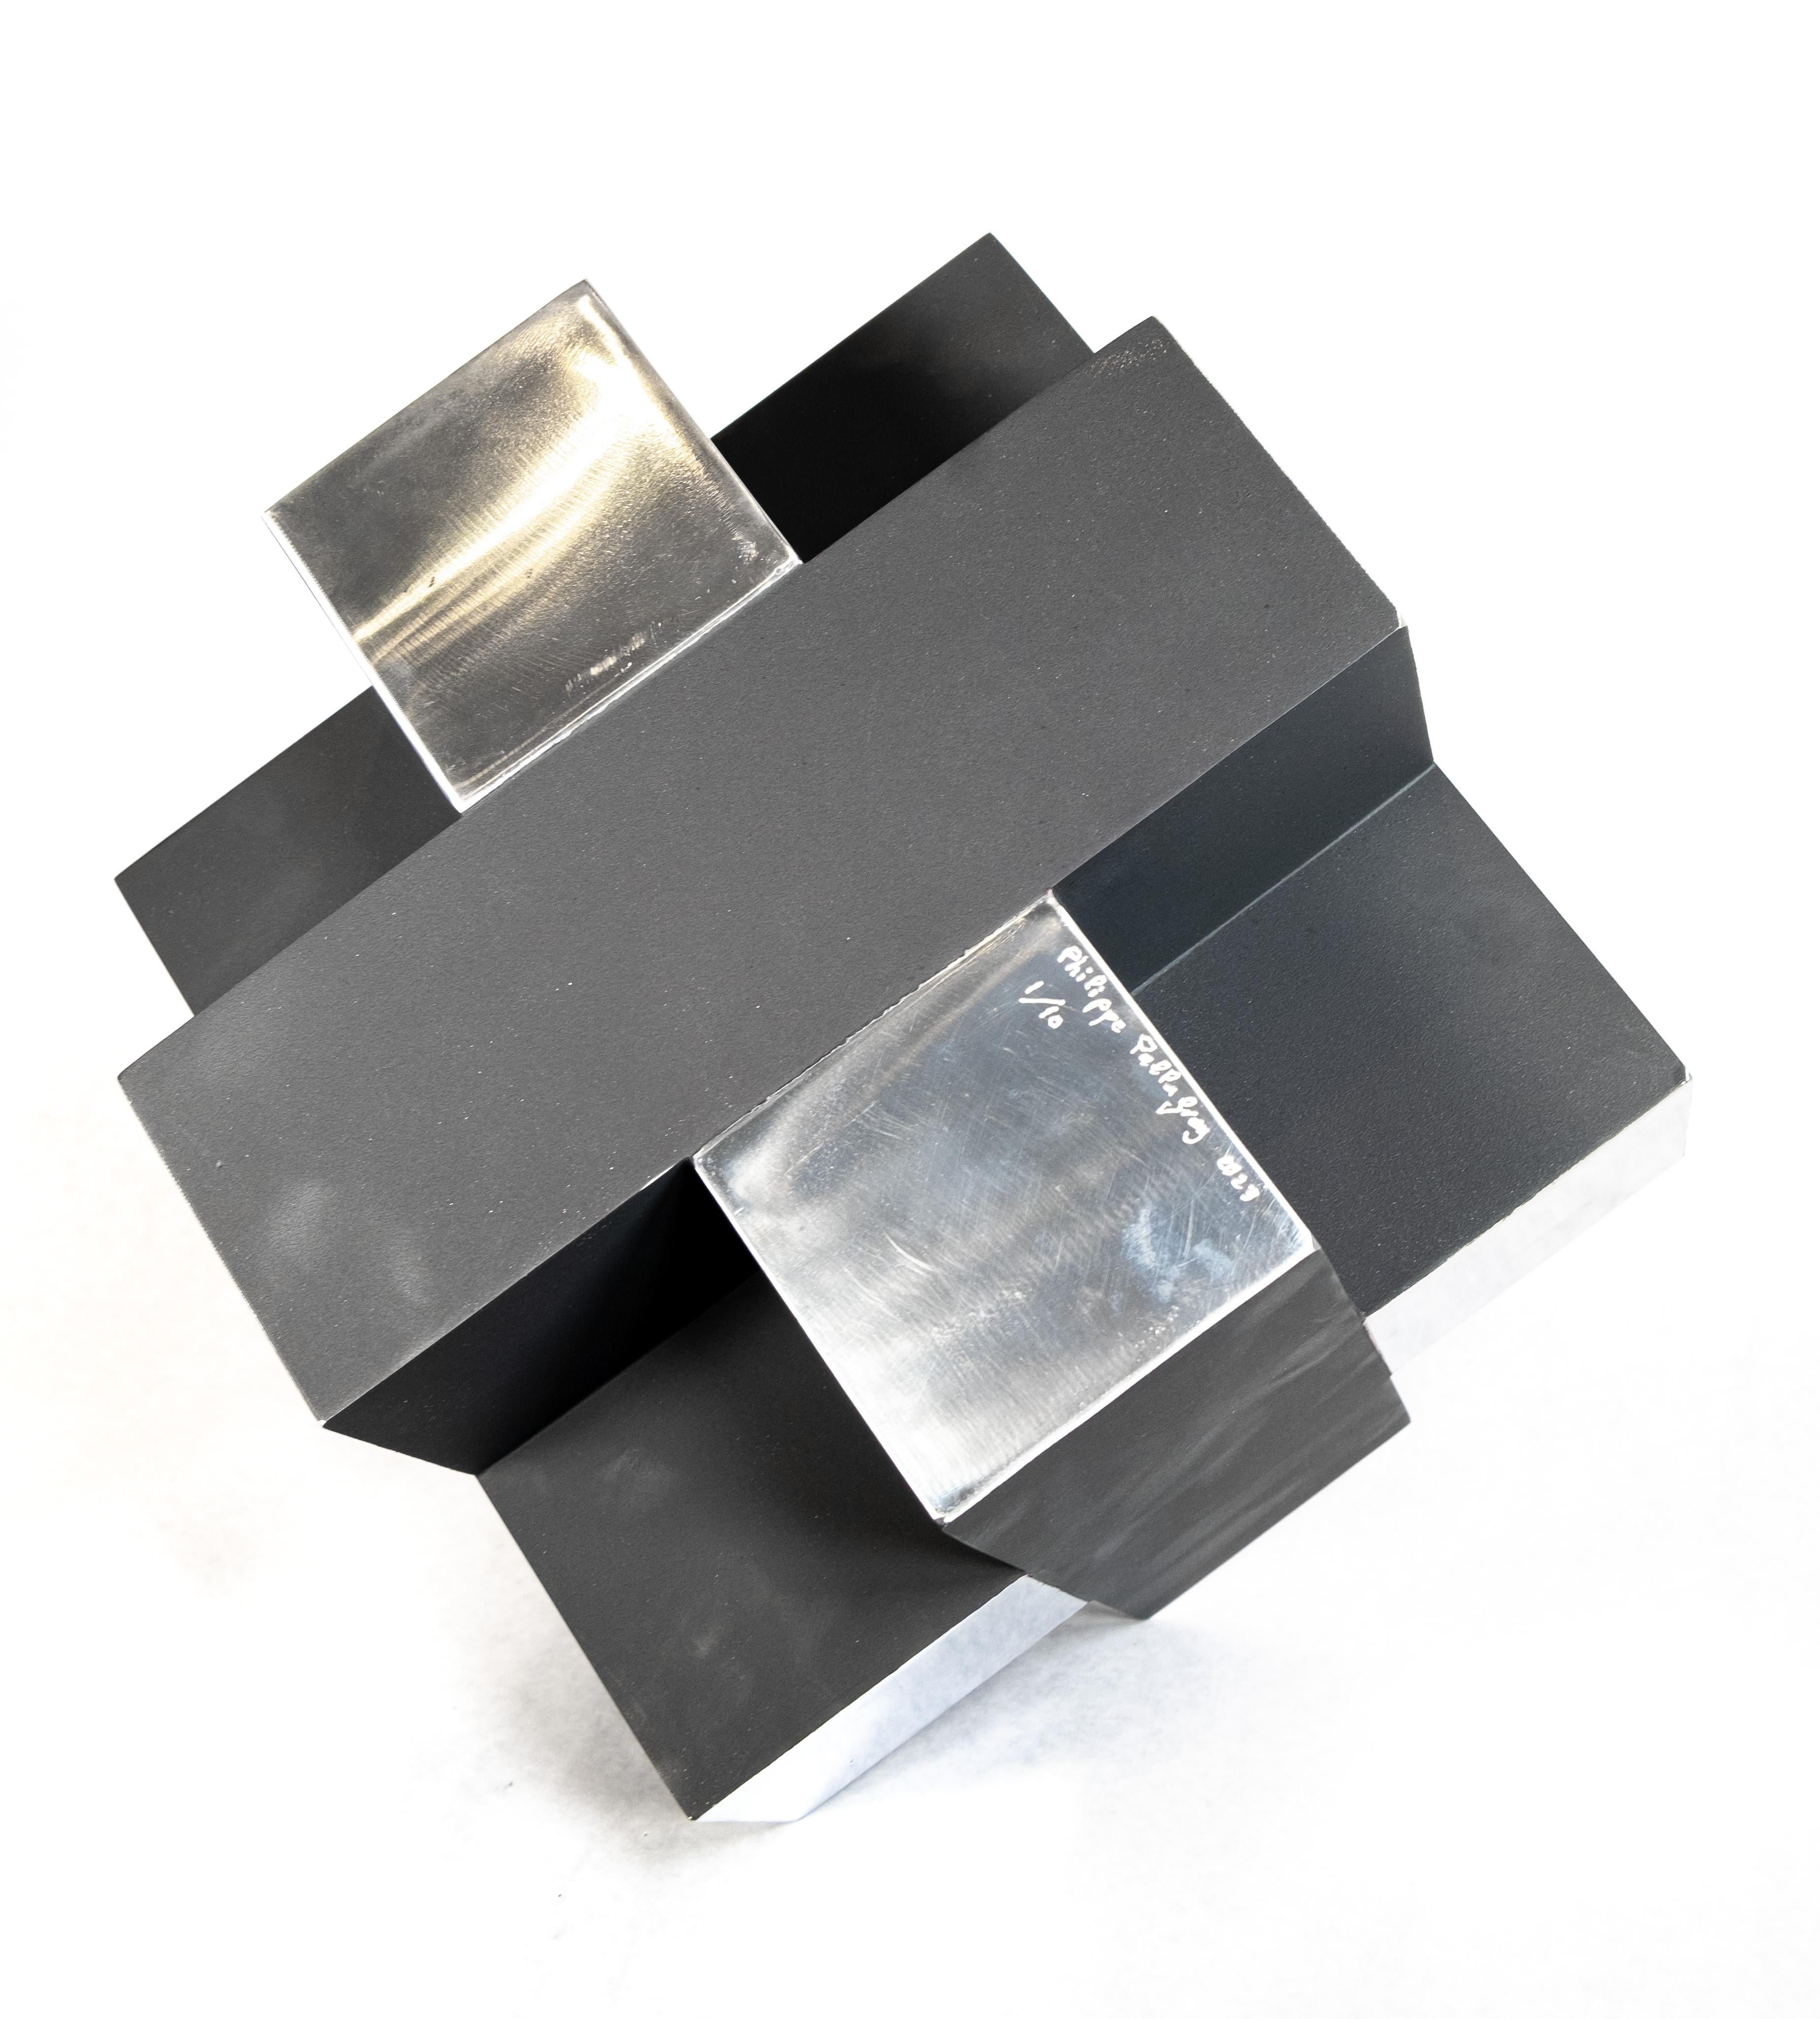 Cette sculpture de table moderne de Philippe Pallafray, qui ressemble à un Rubik's cube, est réalisée en aluminium noir mat et hautement poli, ce qui crée une image saisissante. L'artiste québécois est connu pour ses œuvres sculpturales expressives